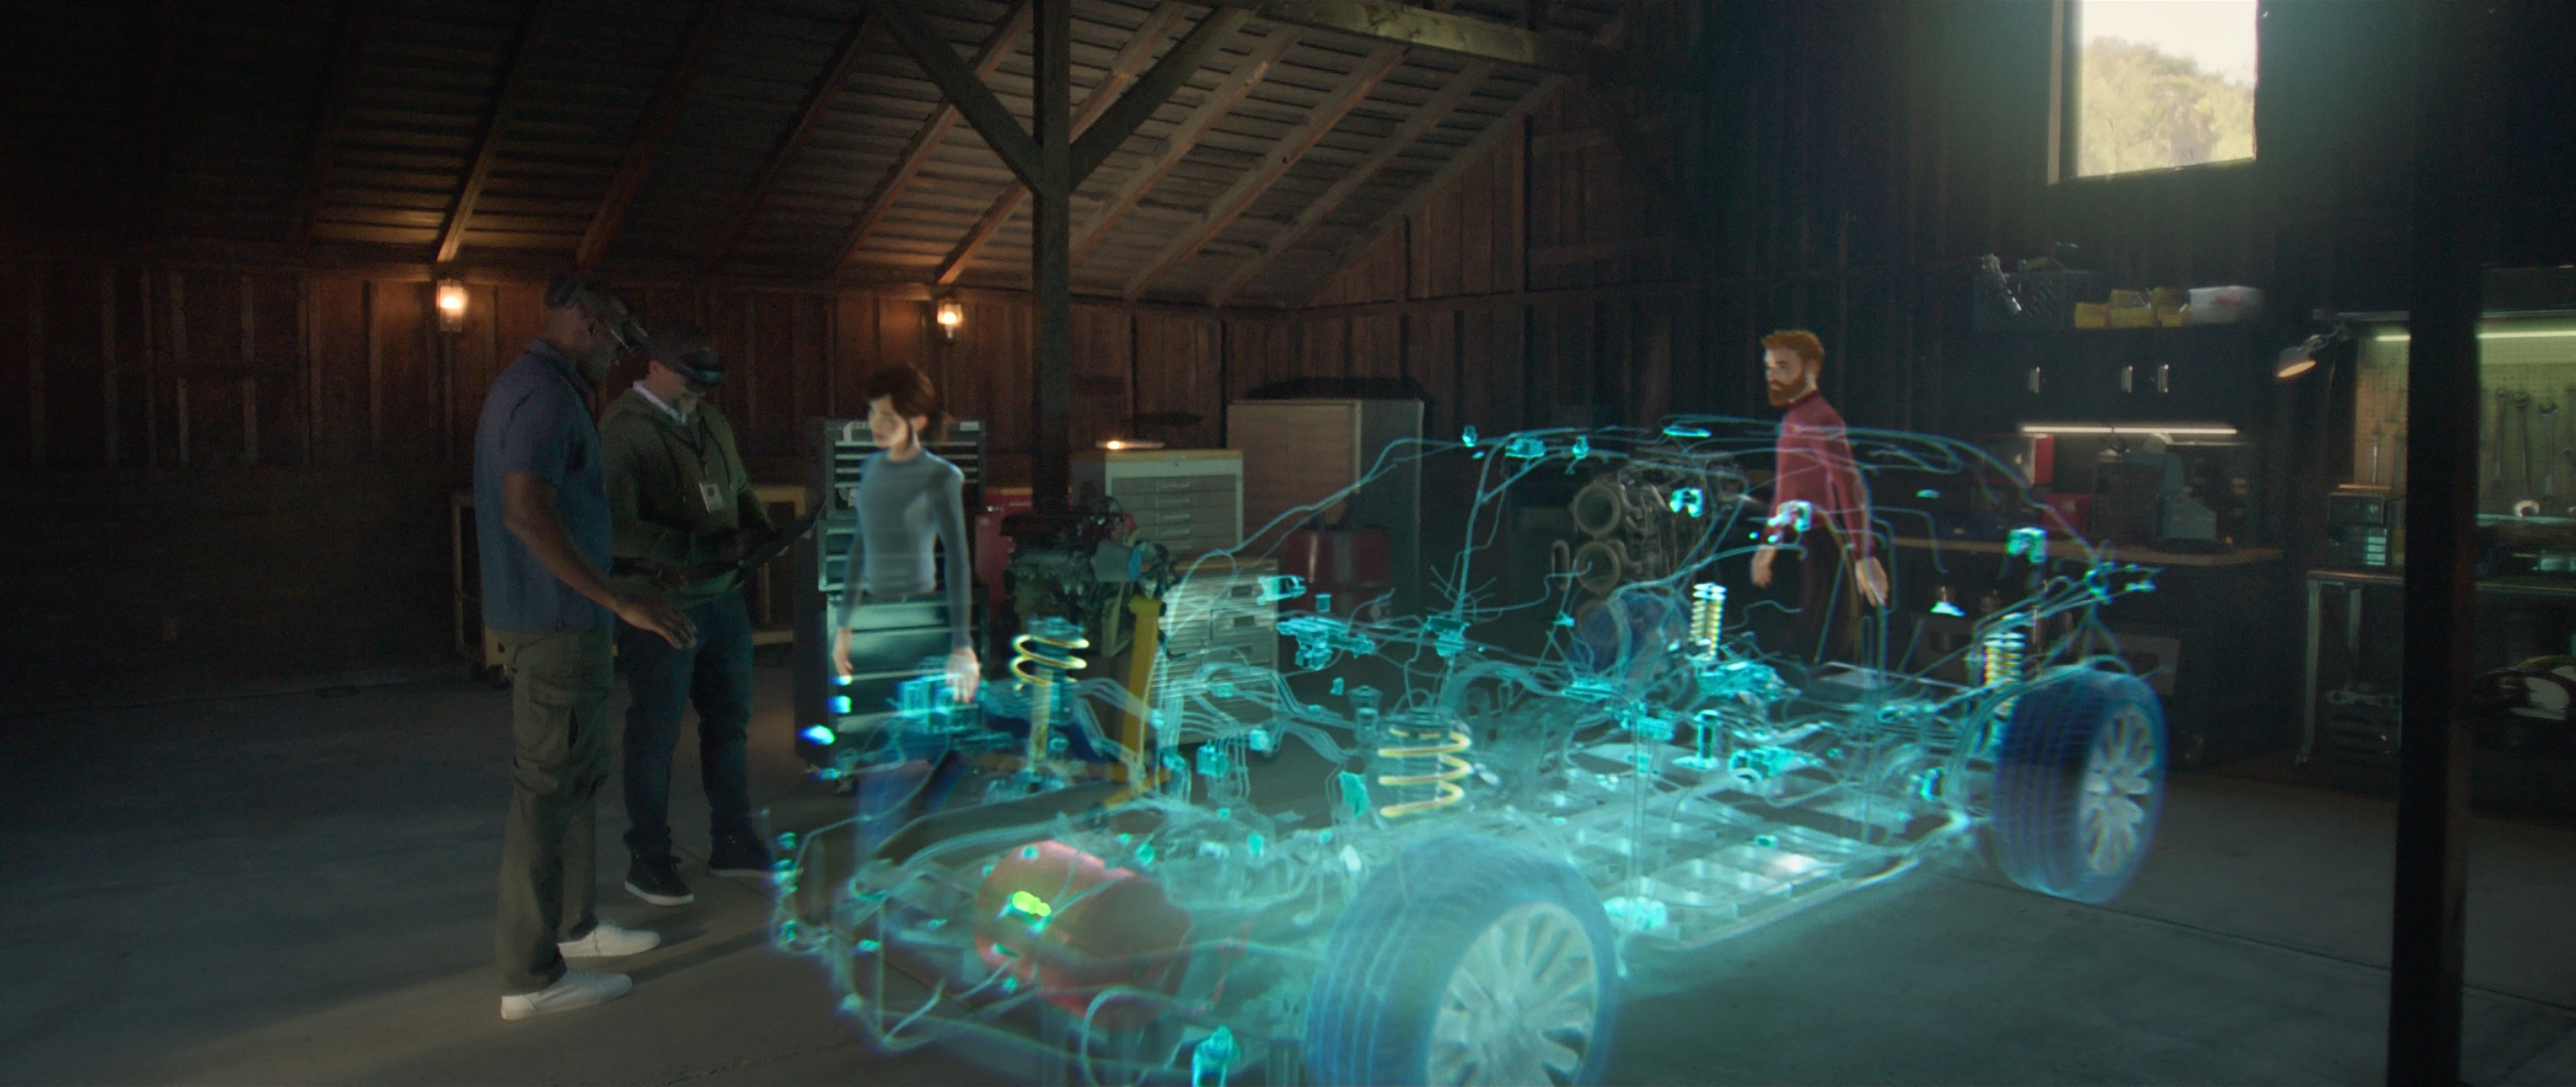 Zdjęcie wirtualnego środowiska współpracy w usłudze Microsoft Mesh: osoby współpracujące z hologramem samochodu.